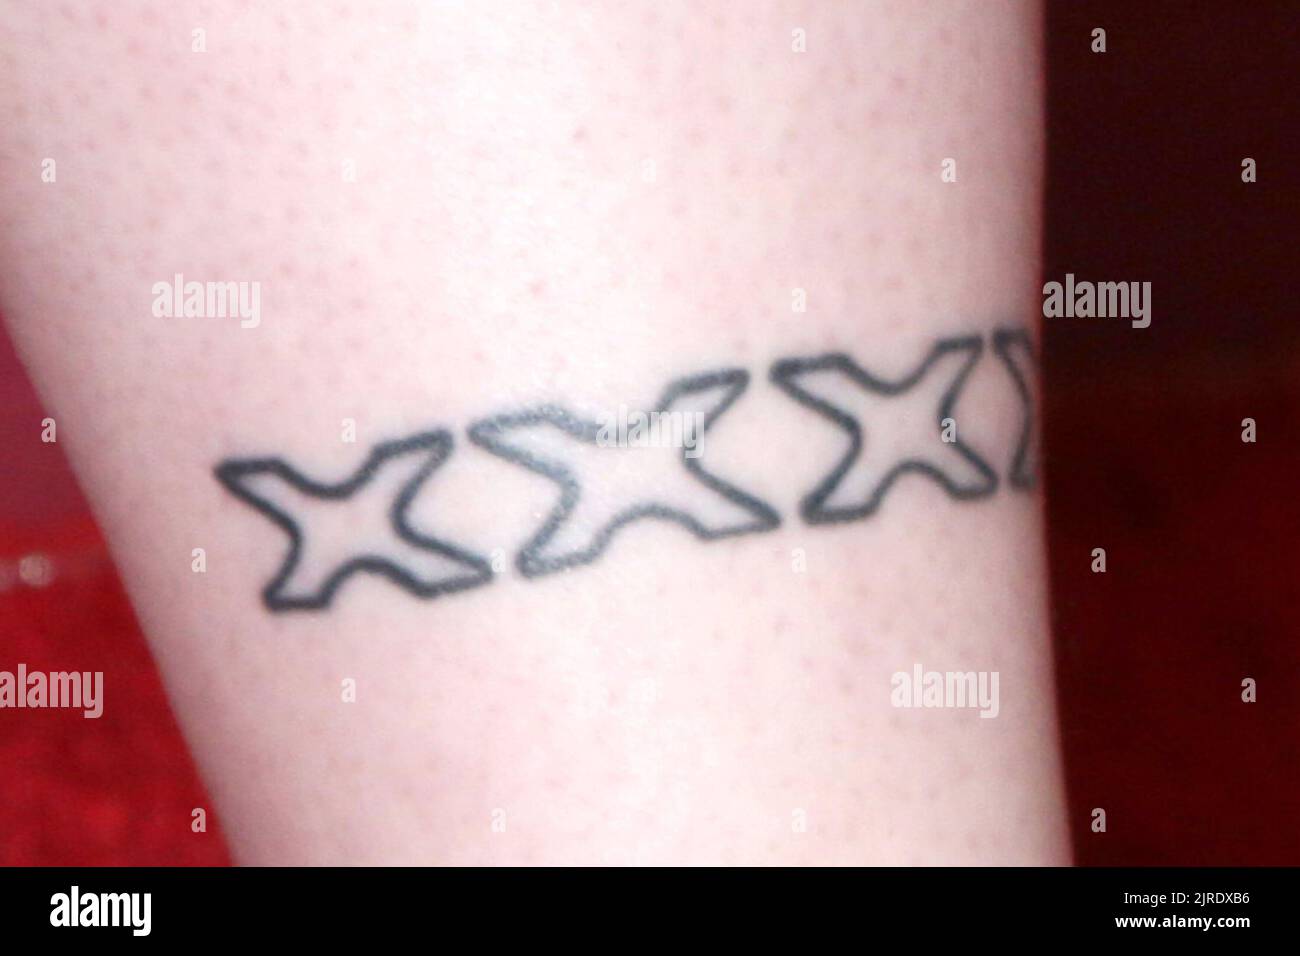 Leg tatoo immagini e fotografie stock ad alta risoluzione - Alamy